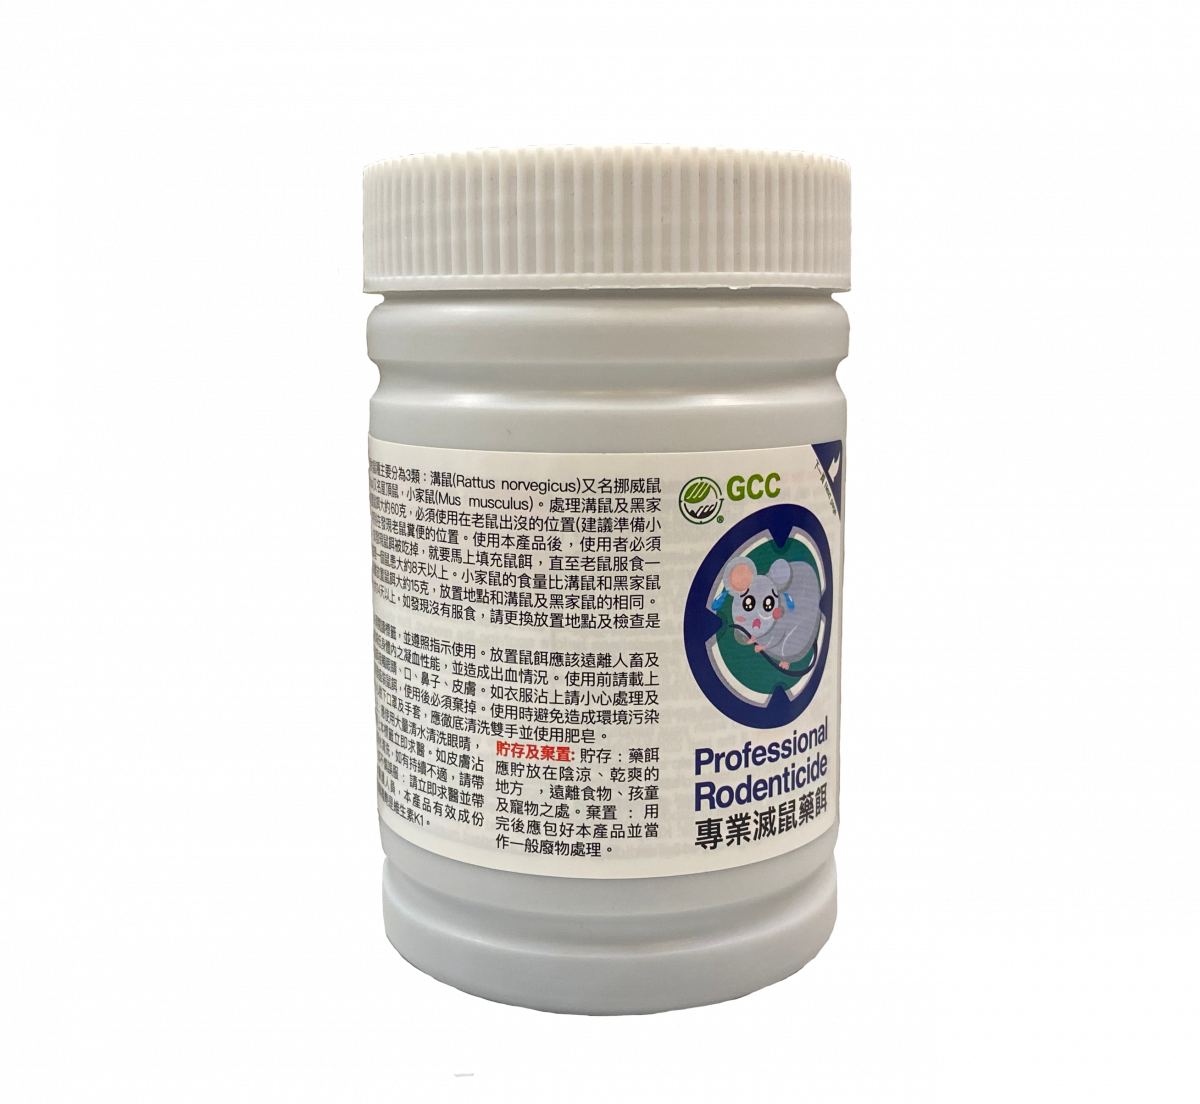 GCC®第二代高效滅鼠藥餌 200g(克) - 滅鼠 老鼠 滅蟲